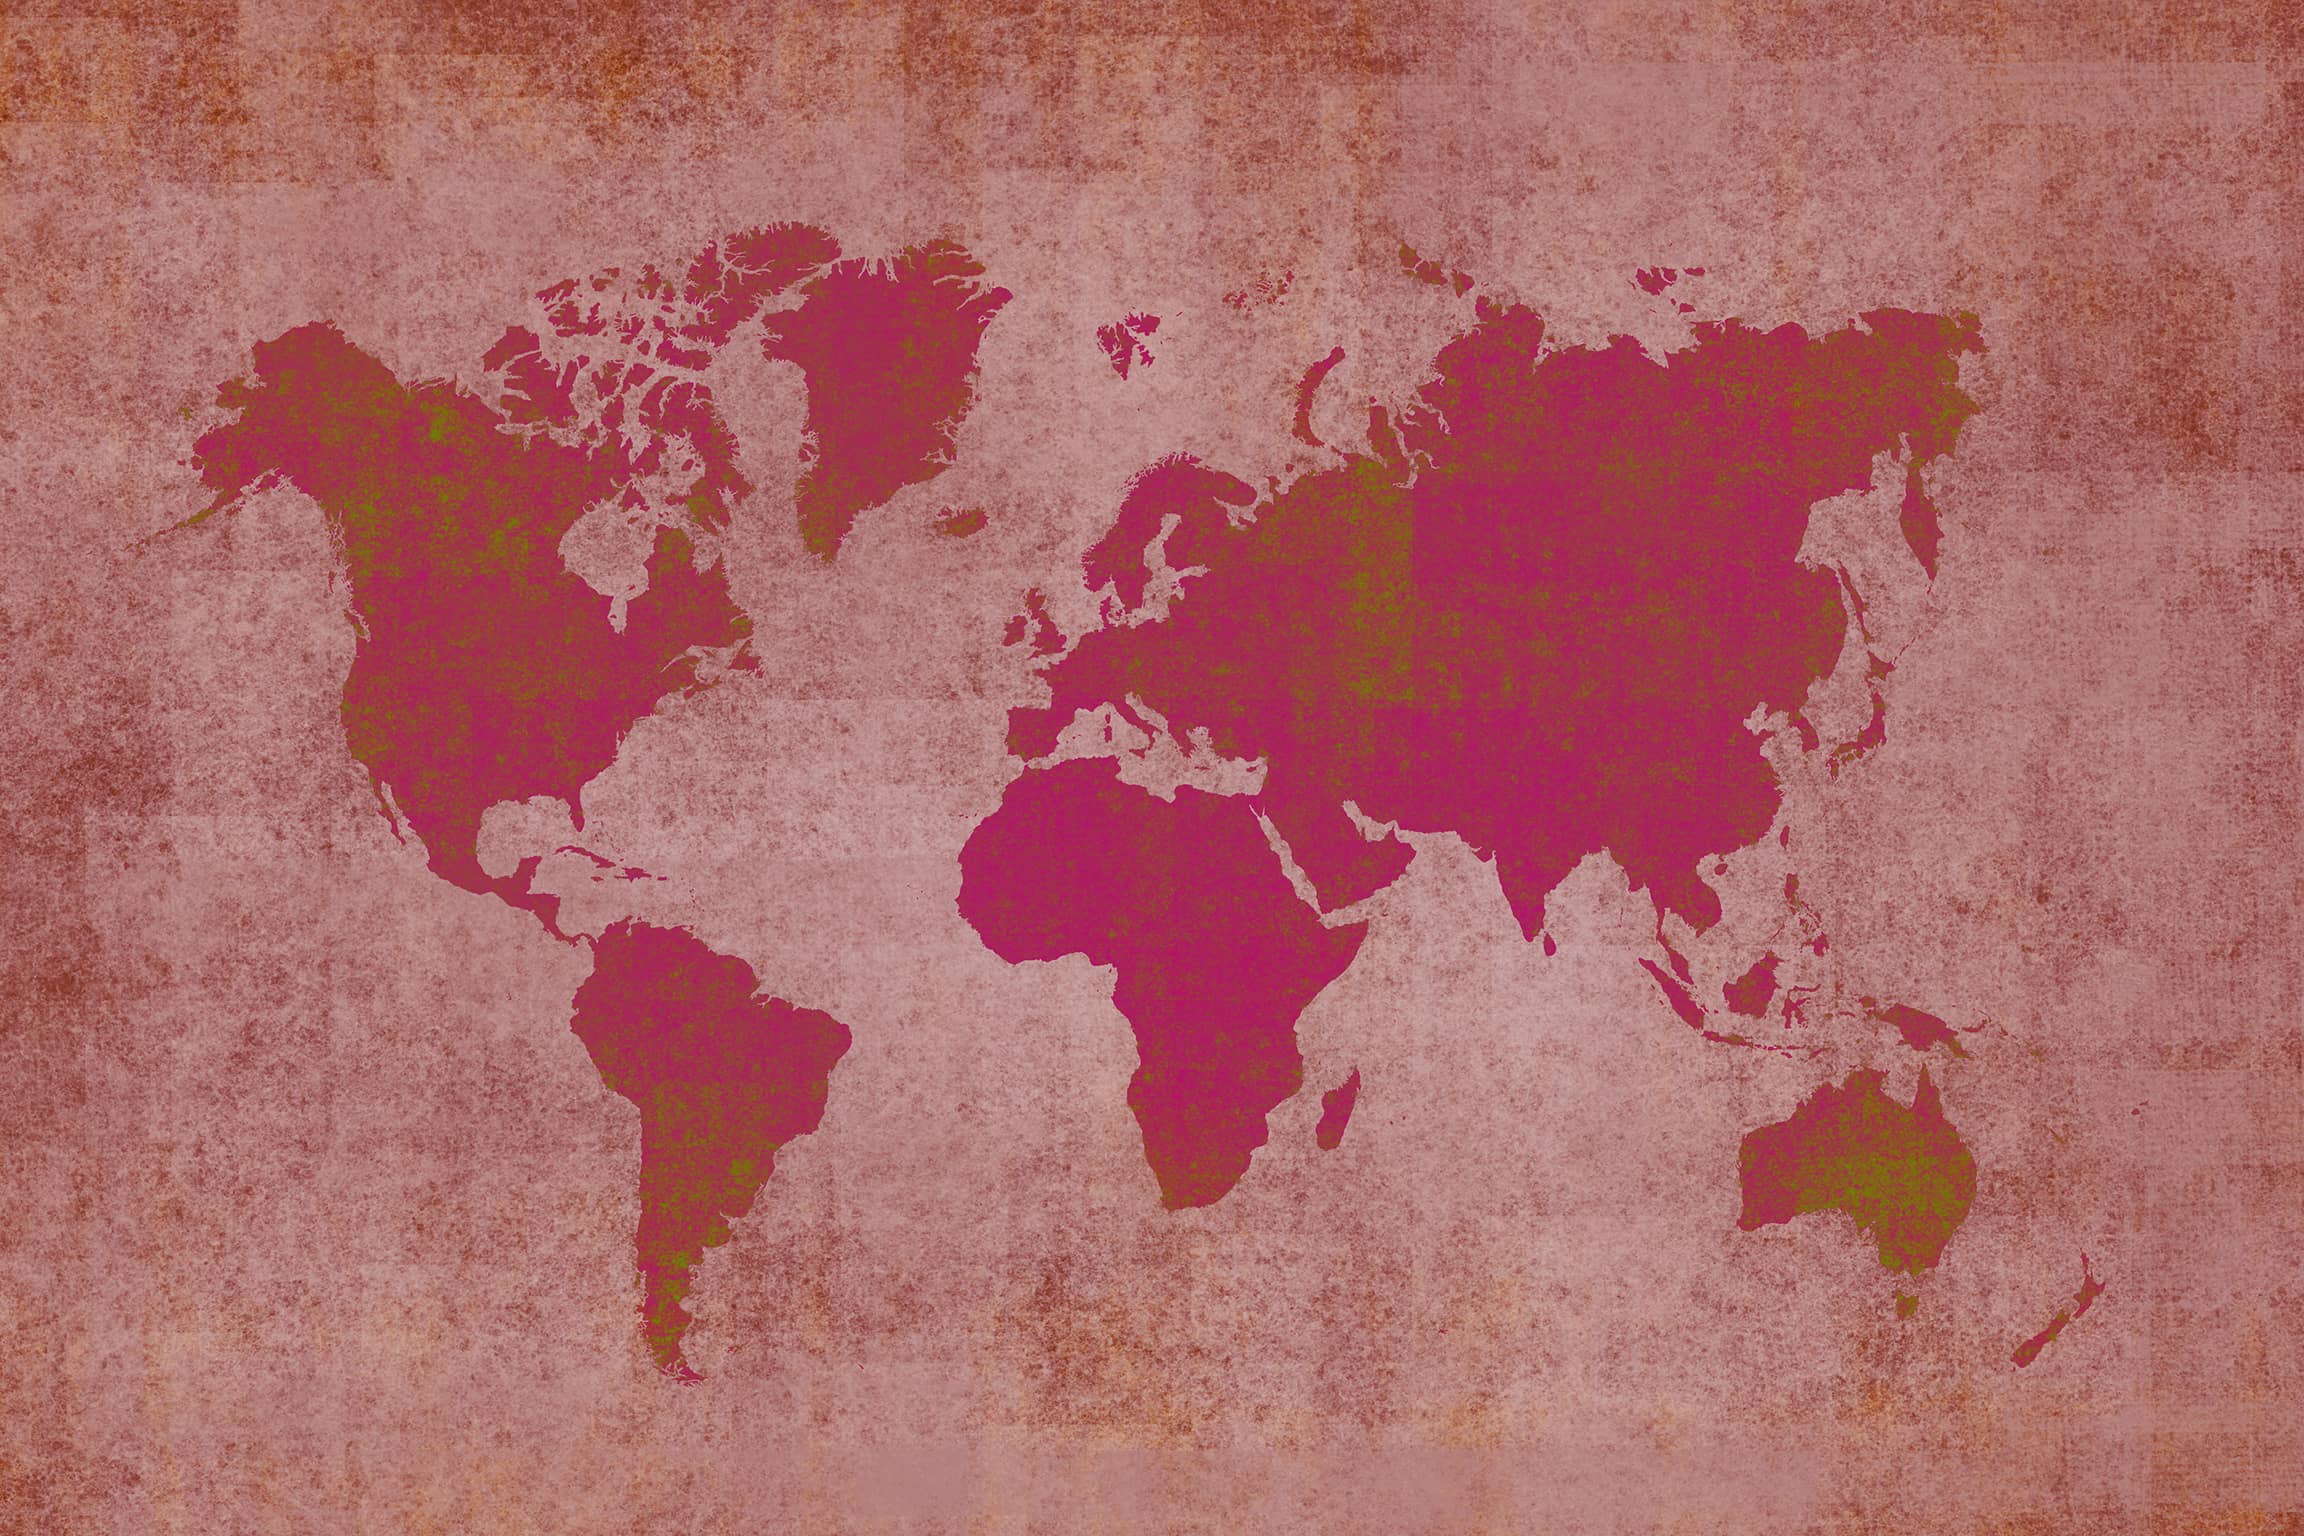 Tự hào giới thiệu bản đồ thế giới cổ điển, một tác phẩm nghệ thuật tuyệt vời của thời đại cũ. Hãy tìm hiểu về lịch sử và văn hóa của thế giới qua bản đồ này, bạn sẽ được trải nghiệm những gì mà không gì có thể sánh được. 